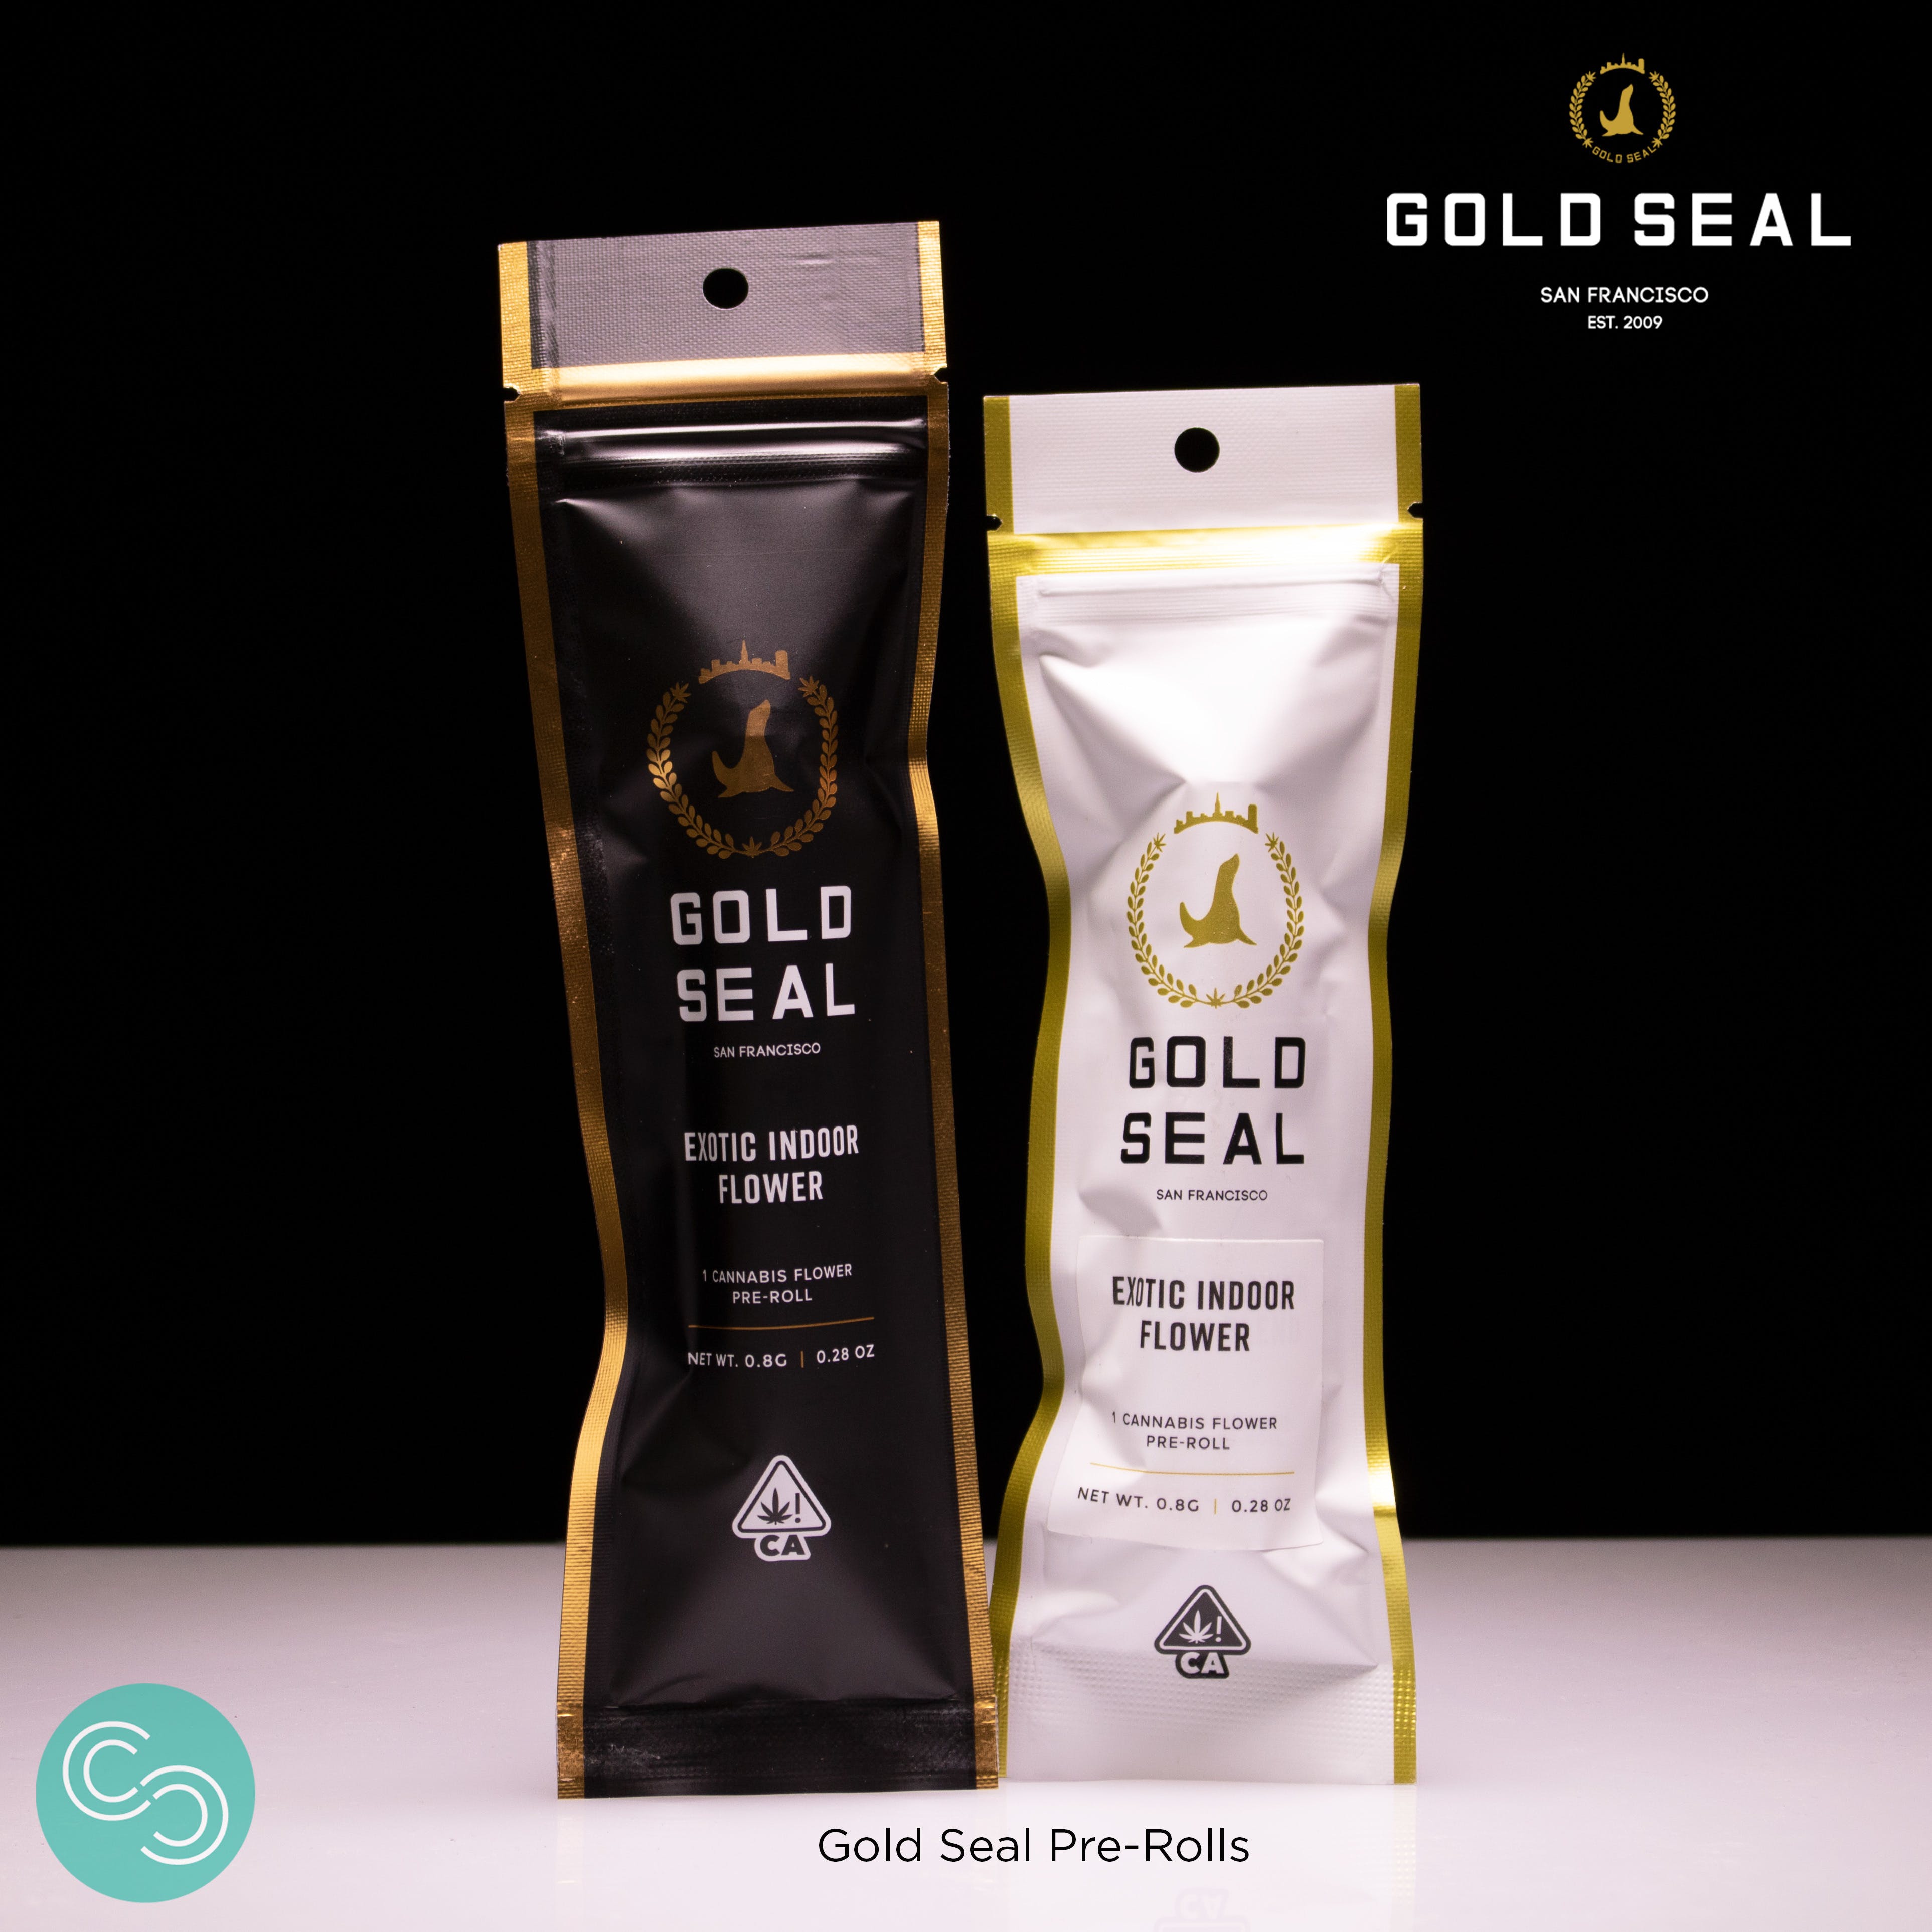 Gold Seal SF - Glue - 19.47% THC